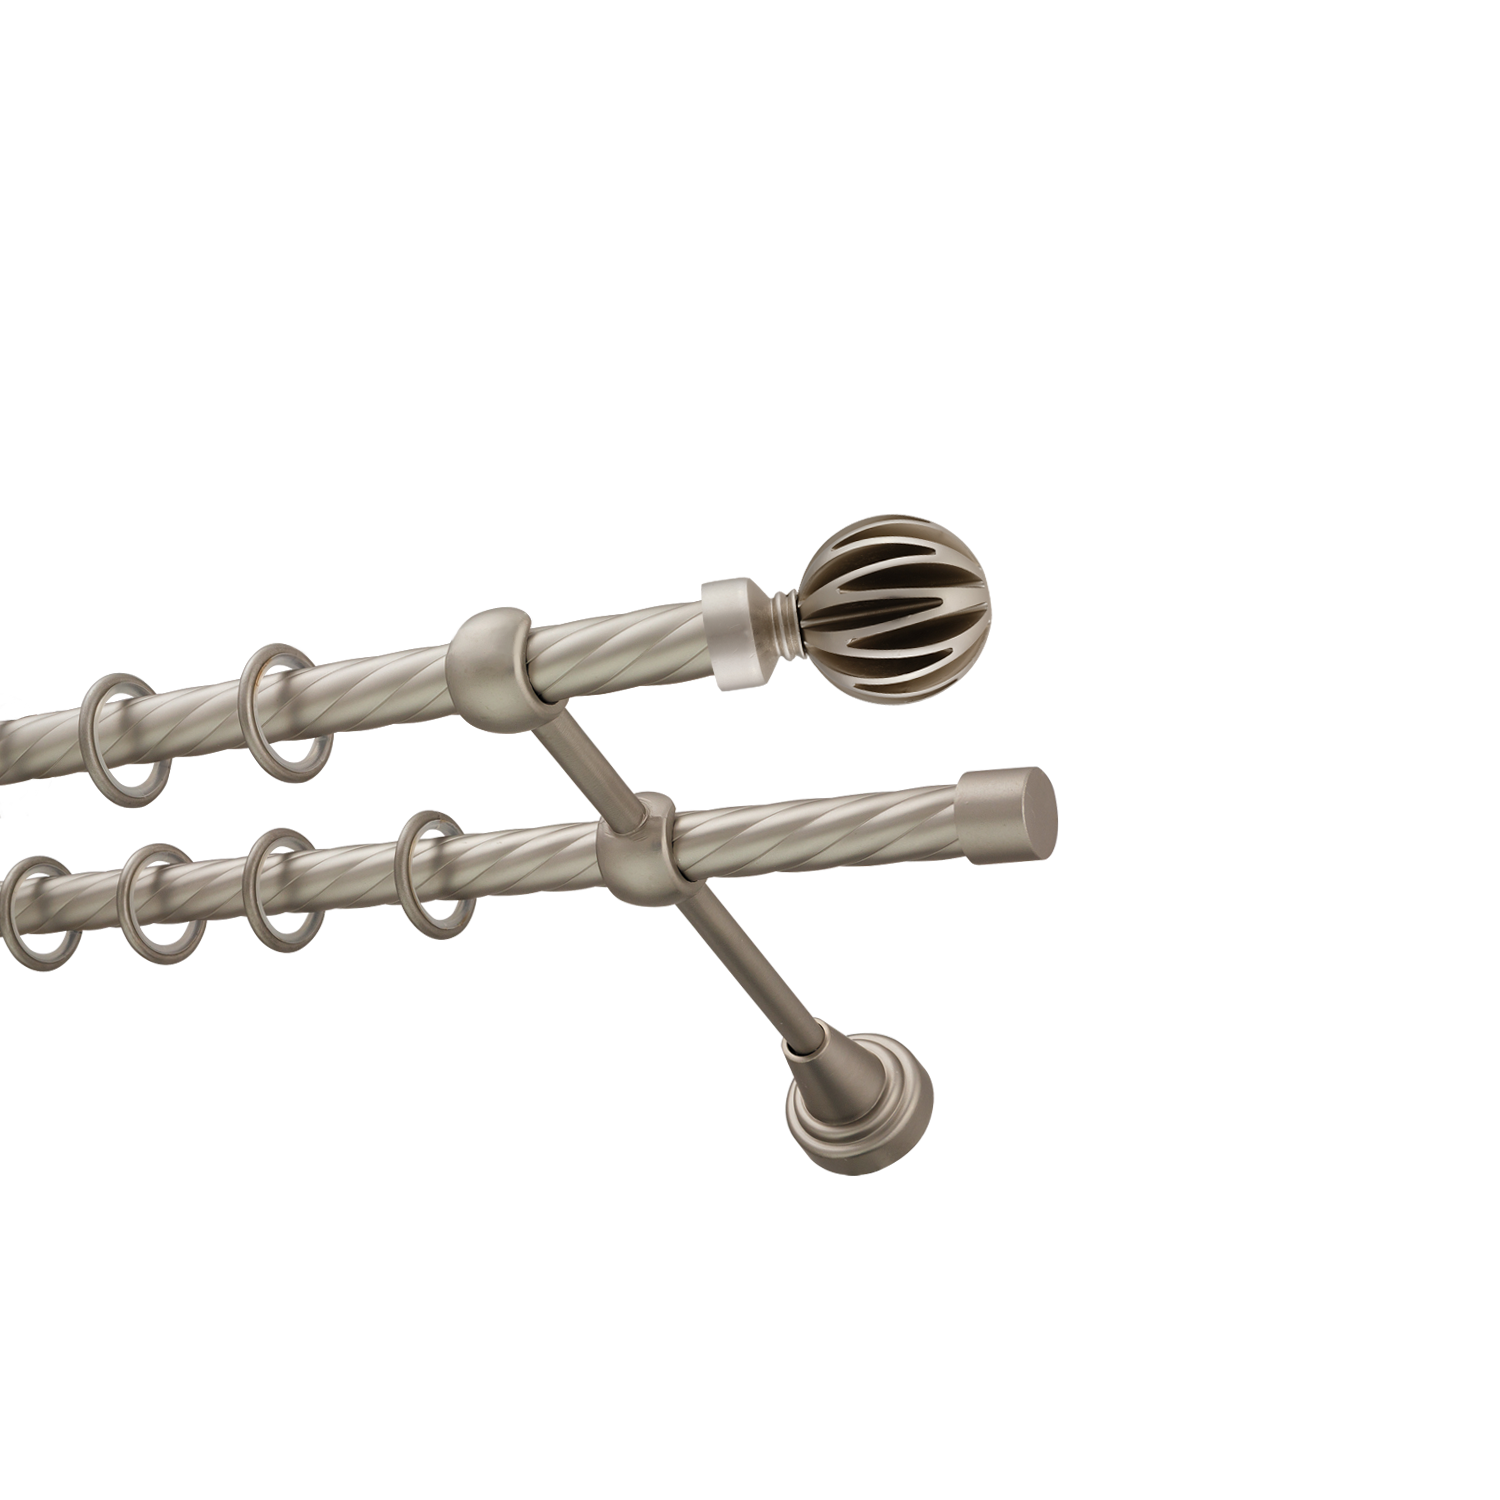 Металлический карниз для штор Шафран, двухрядный 16/16 мм, сталь, витая штанга, длина 240 см